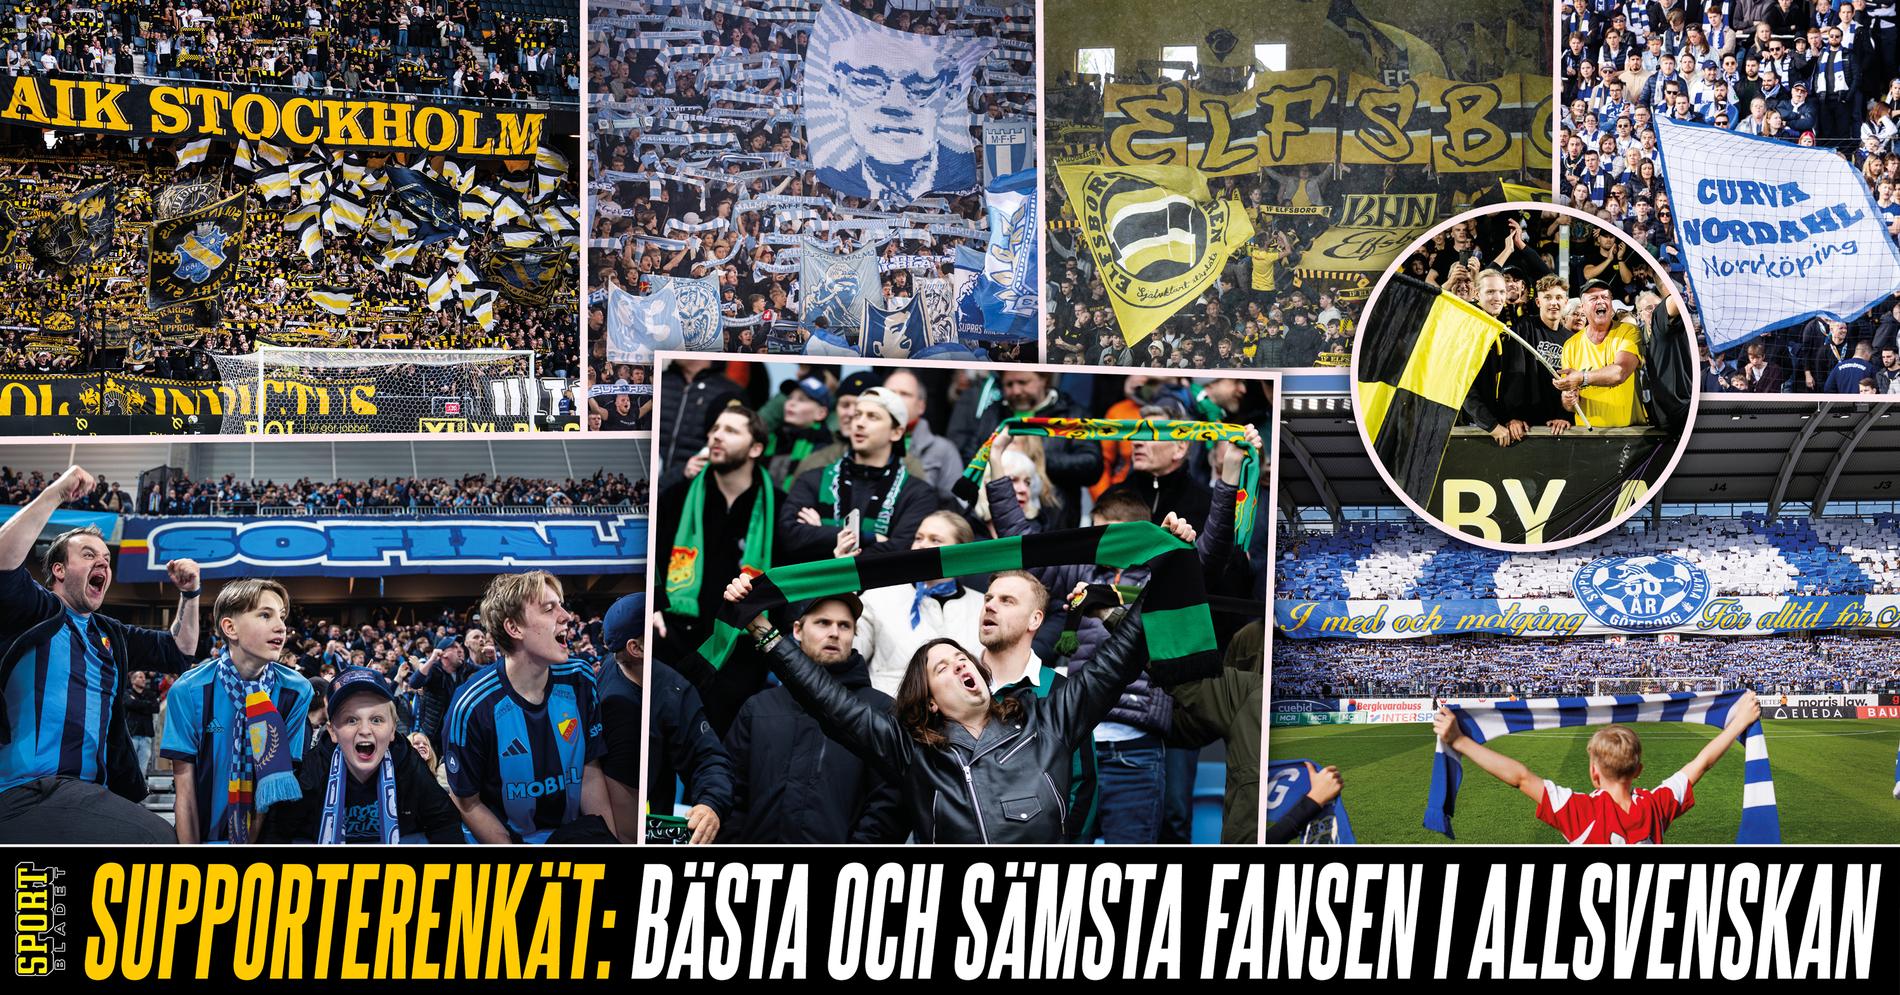 AIK Fotboll: Stor supporterenkät: Bästa och sämsta fansen i allsvenskan